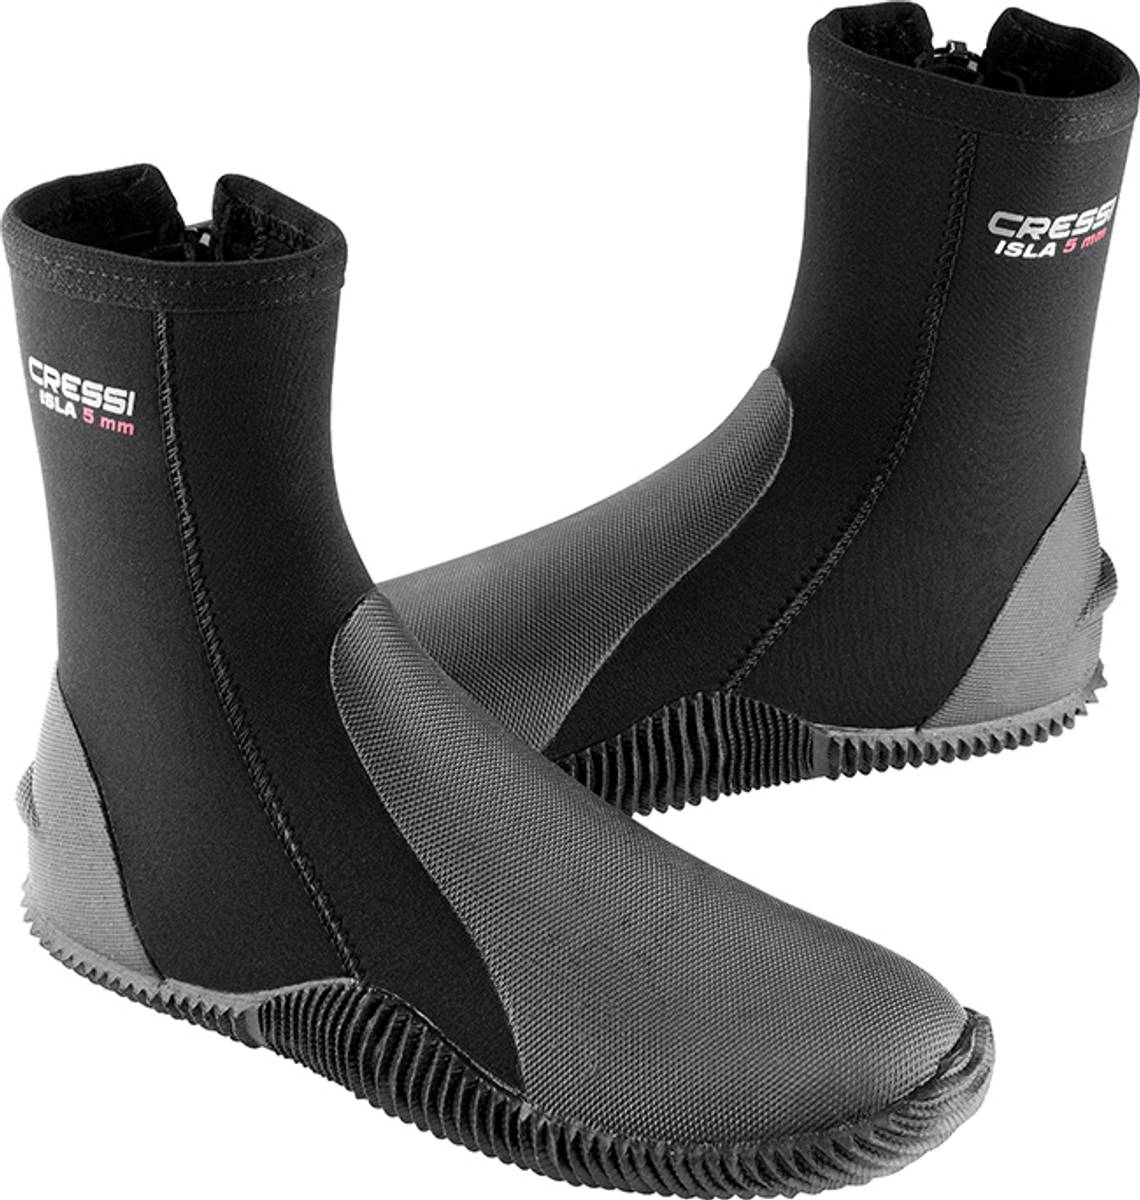 Cressi Isla 5mm wet shoes